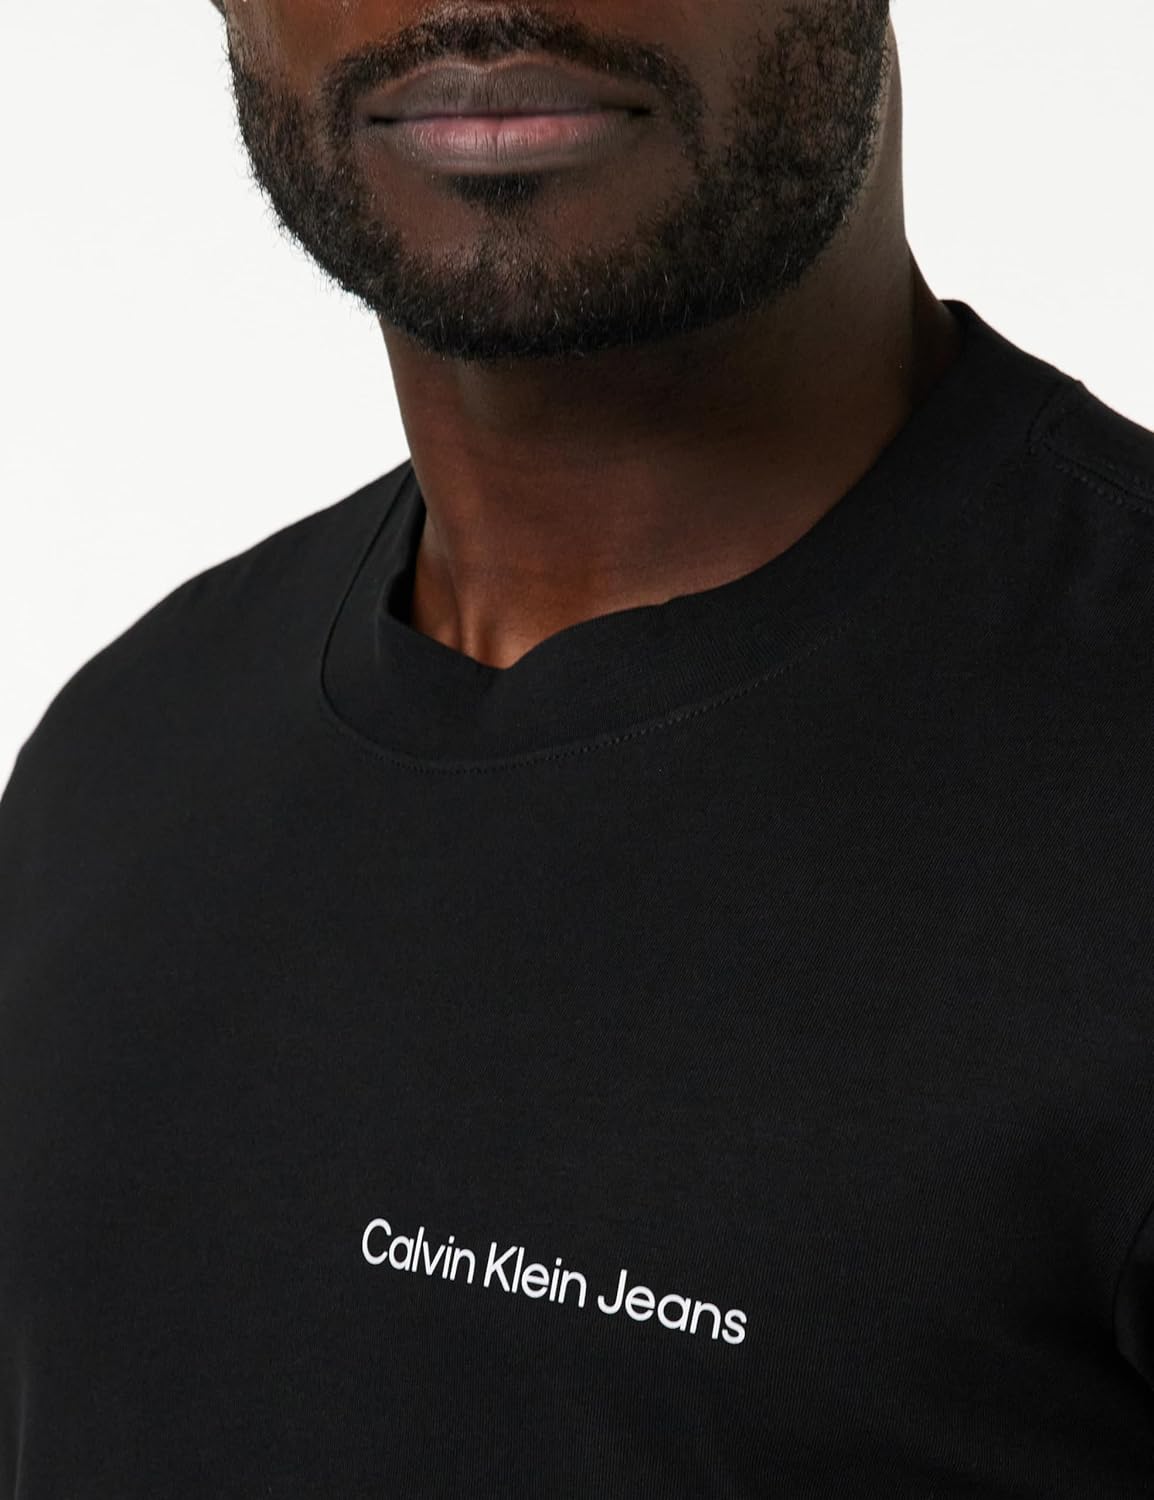 CALVIN KLEIN T-shirt Uomo - Nero